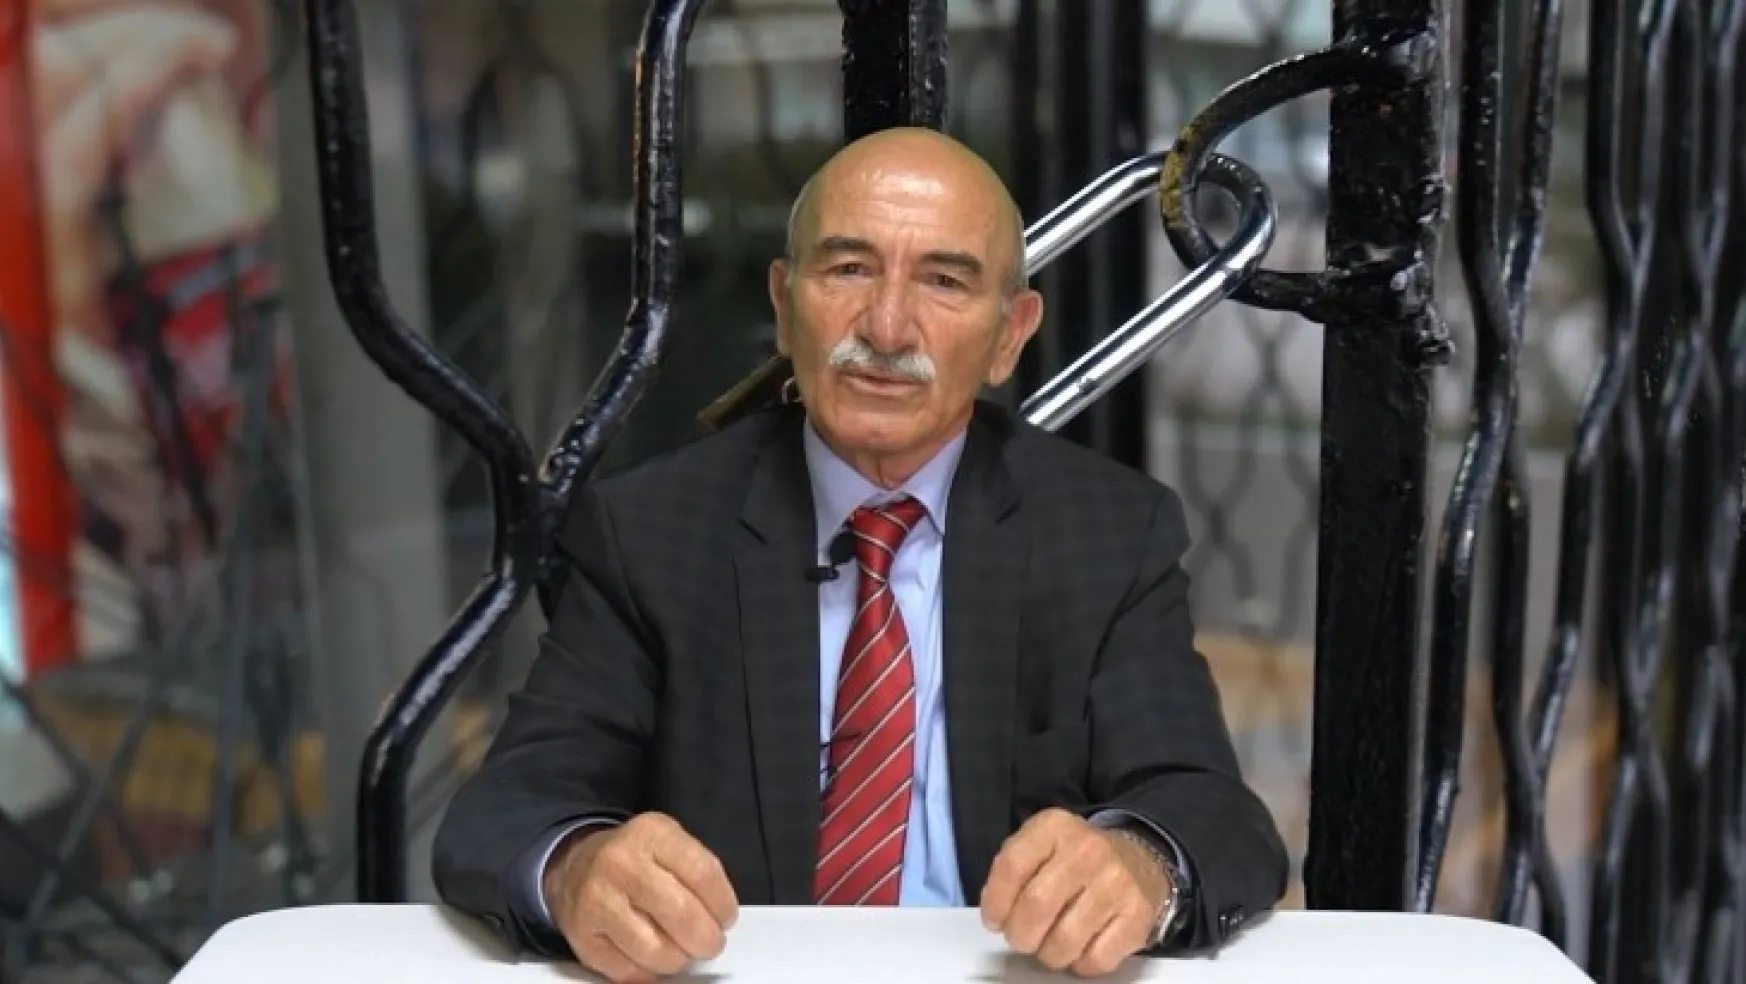 Mustafa Kesinbaşoğlu Esnafhabertvye Konuştu